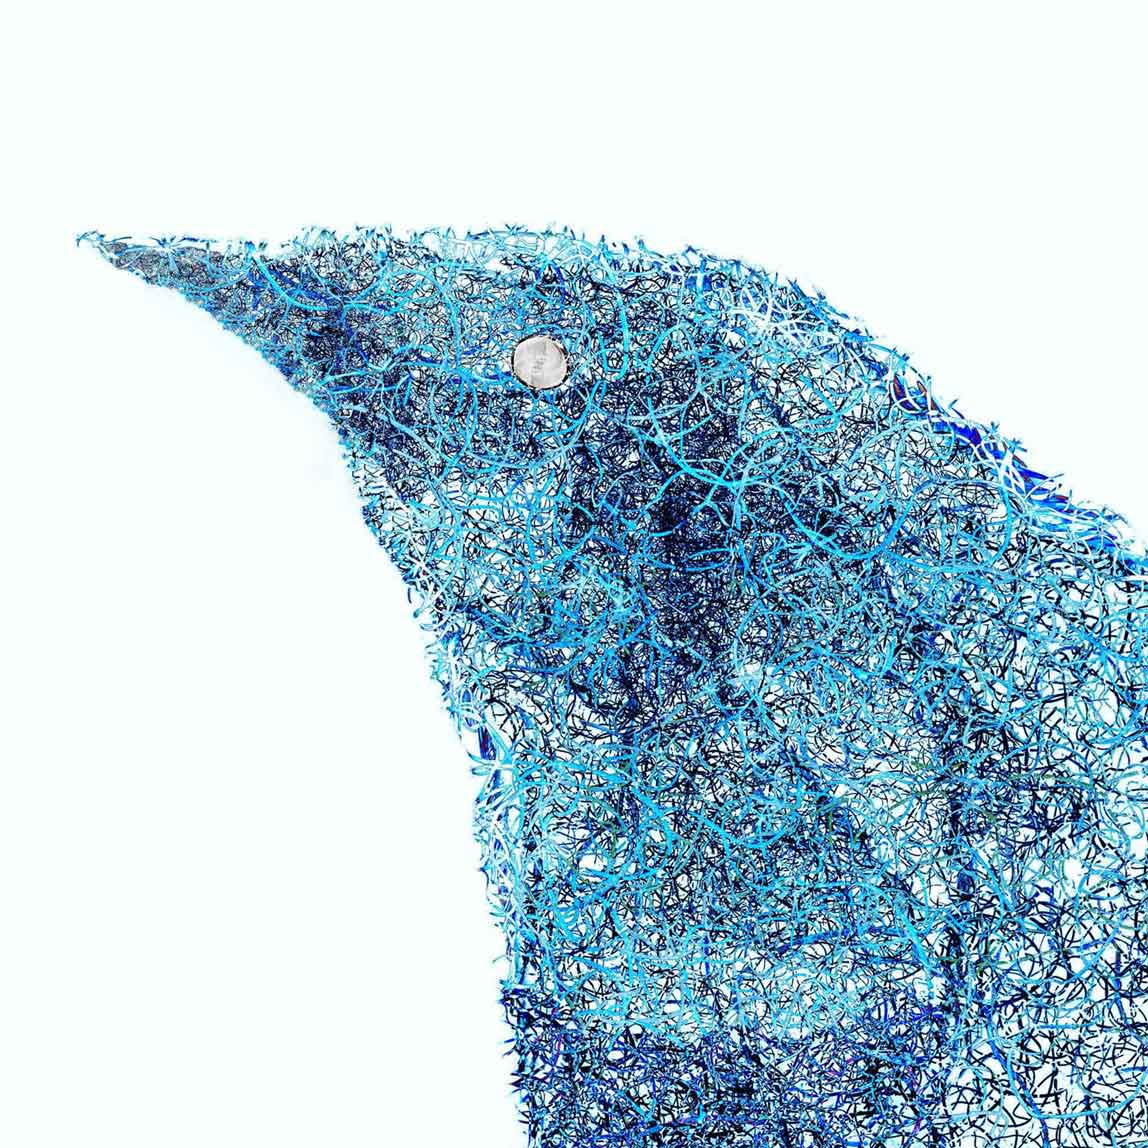 Atsushigraphの作品「Bluebird」の画像です。